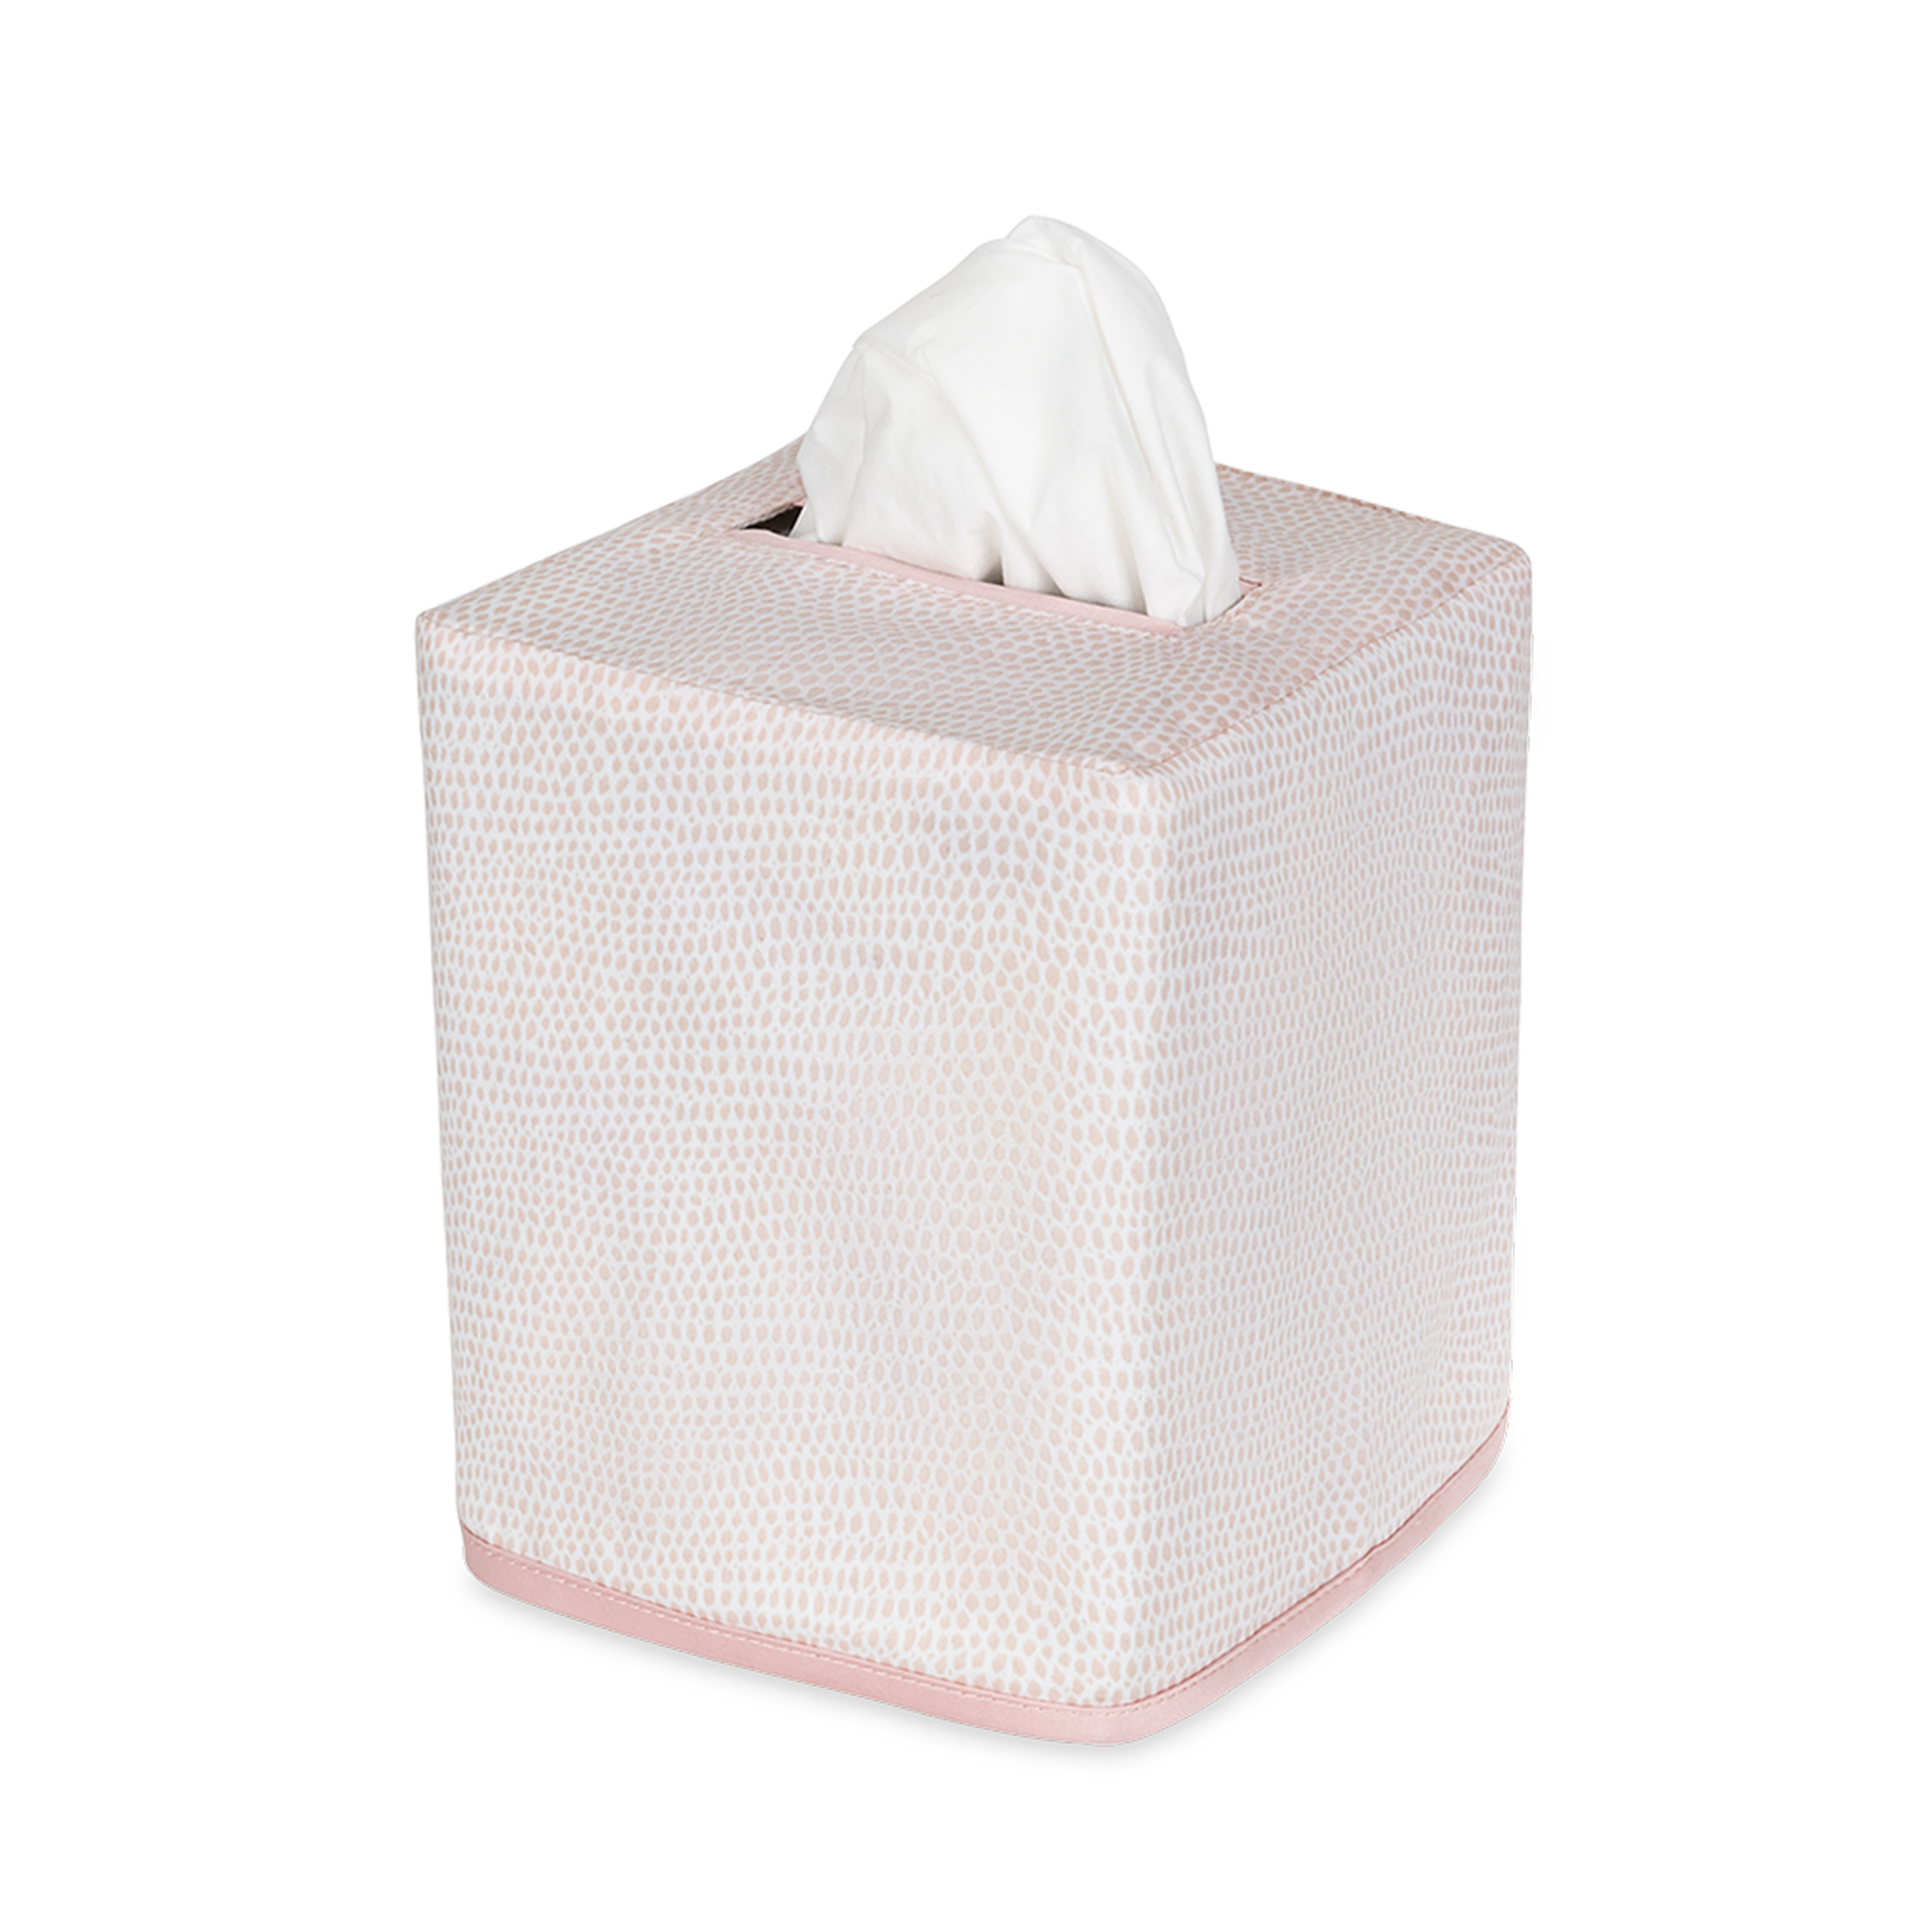 Silo Image of Matouk Jasper Tissue Box Cover in Pink Color